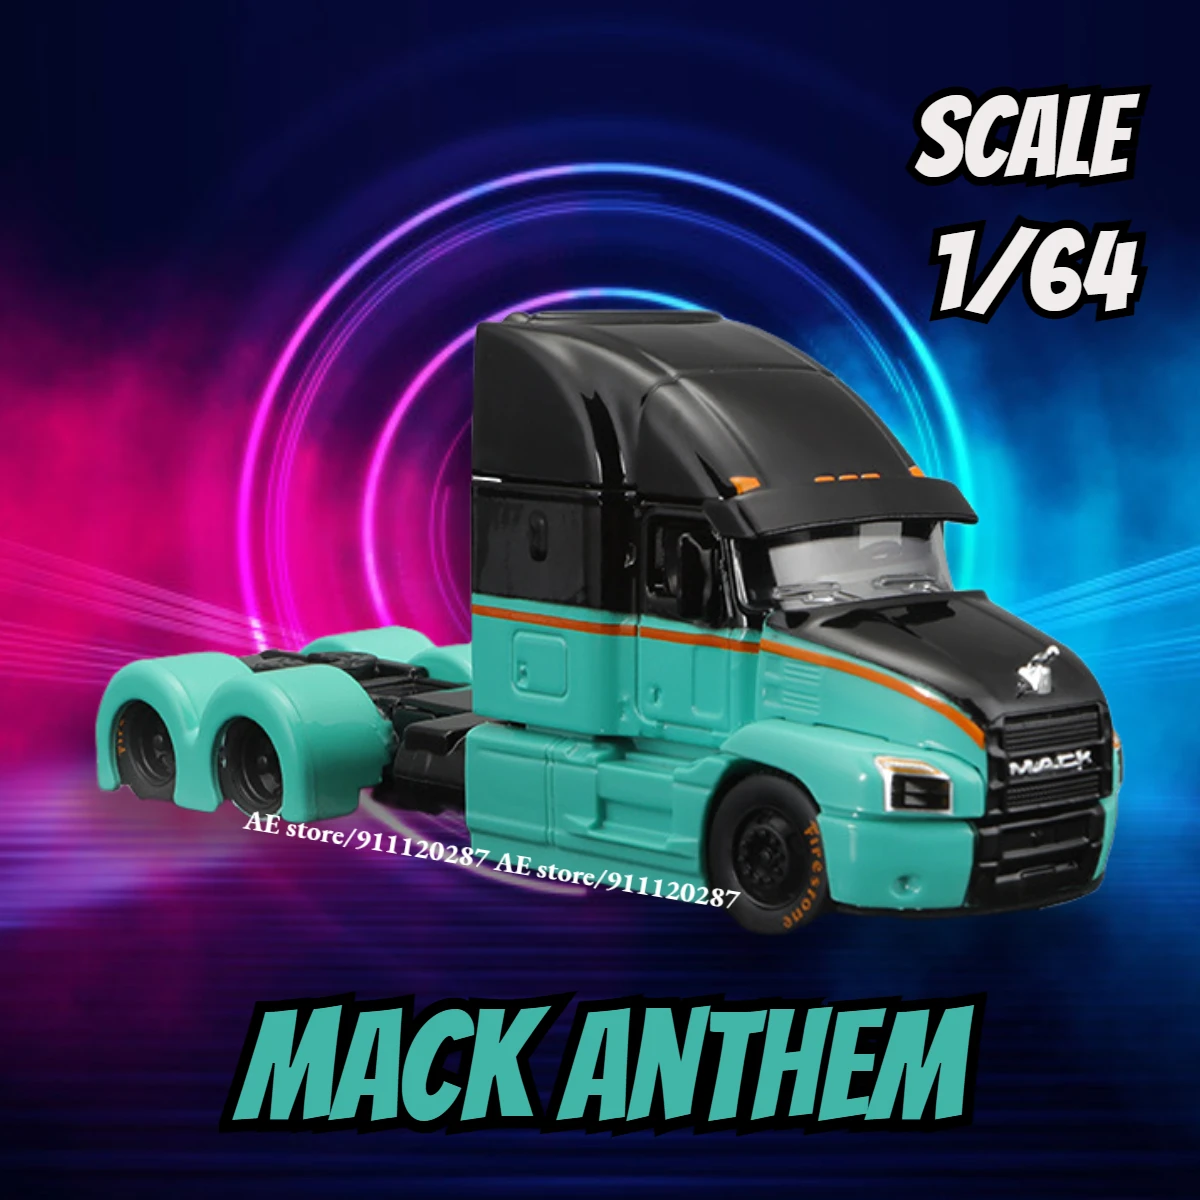 

Maisto 1/64 мини модель грузового автомобиля Миниатюрный, MACK Anthem зеленый масштаб трейлер автомобиль литья под давлением Реплика коллекция игрушек